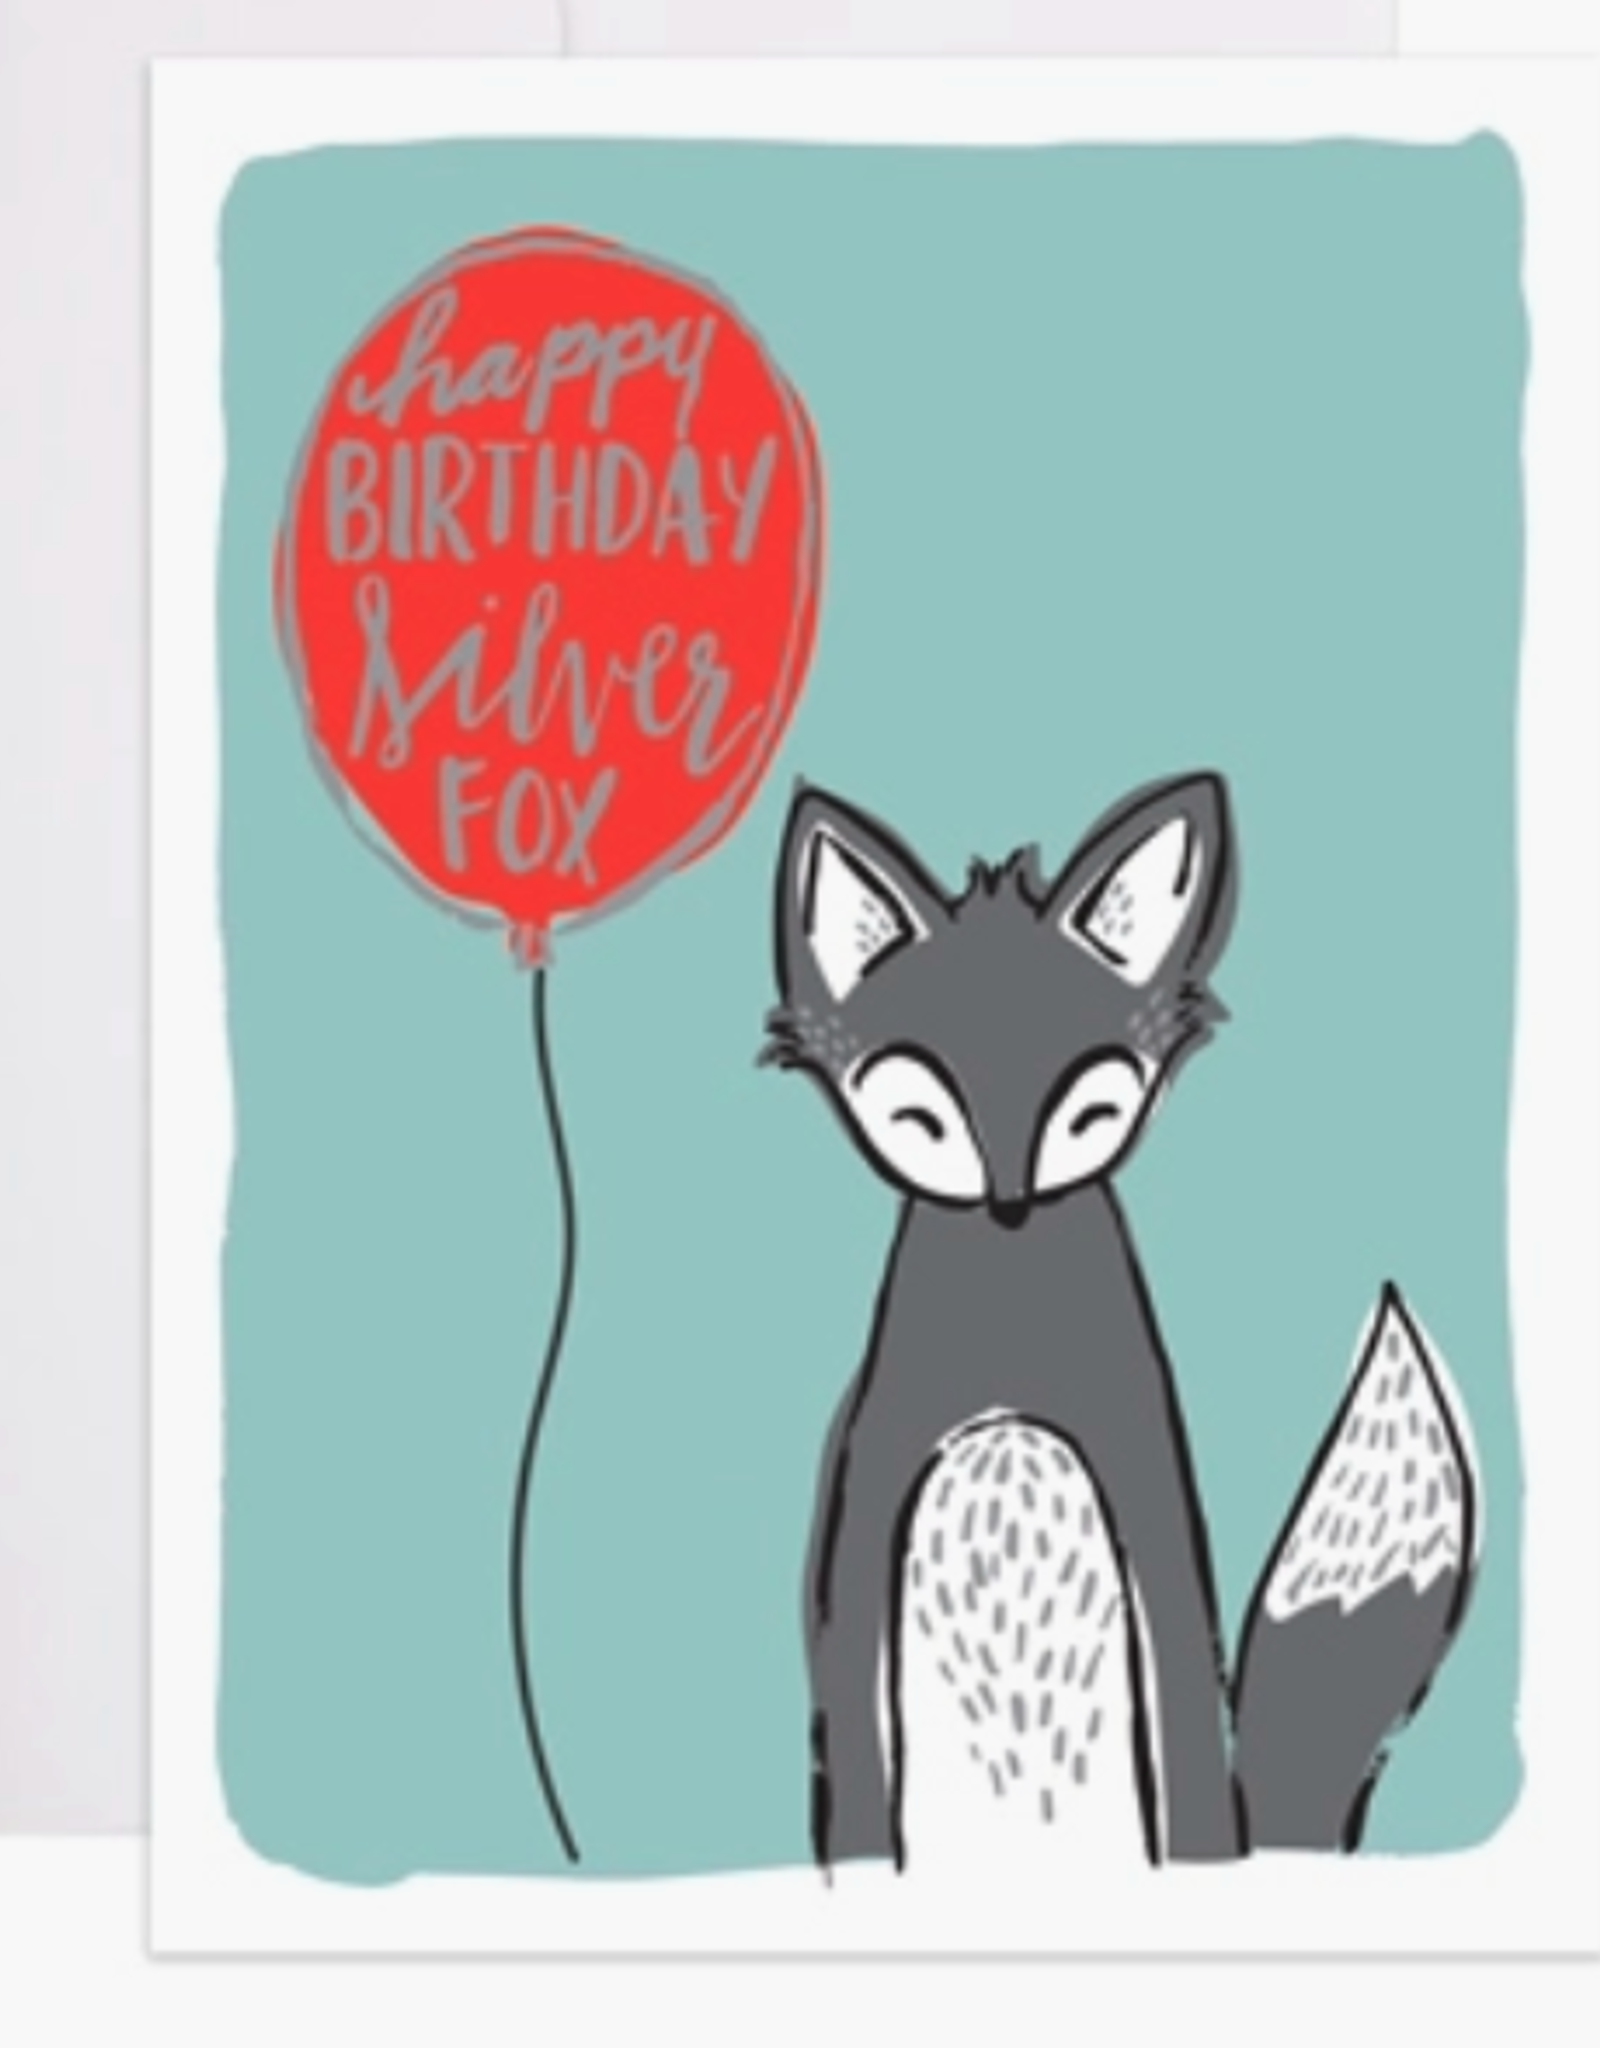 Happy Birthday Silver Fox Card